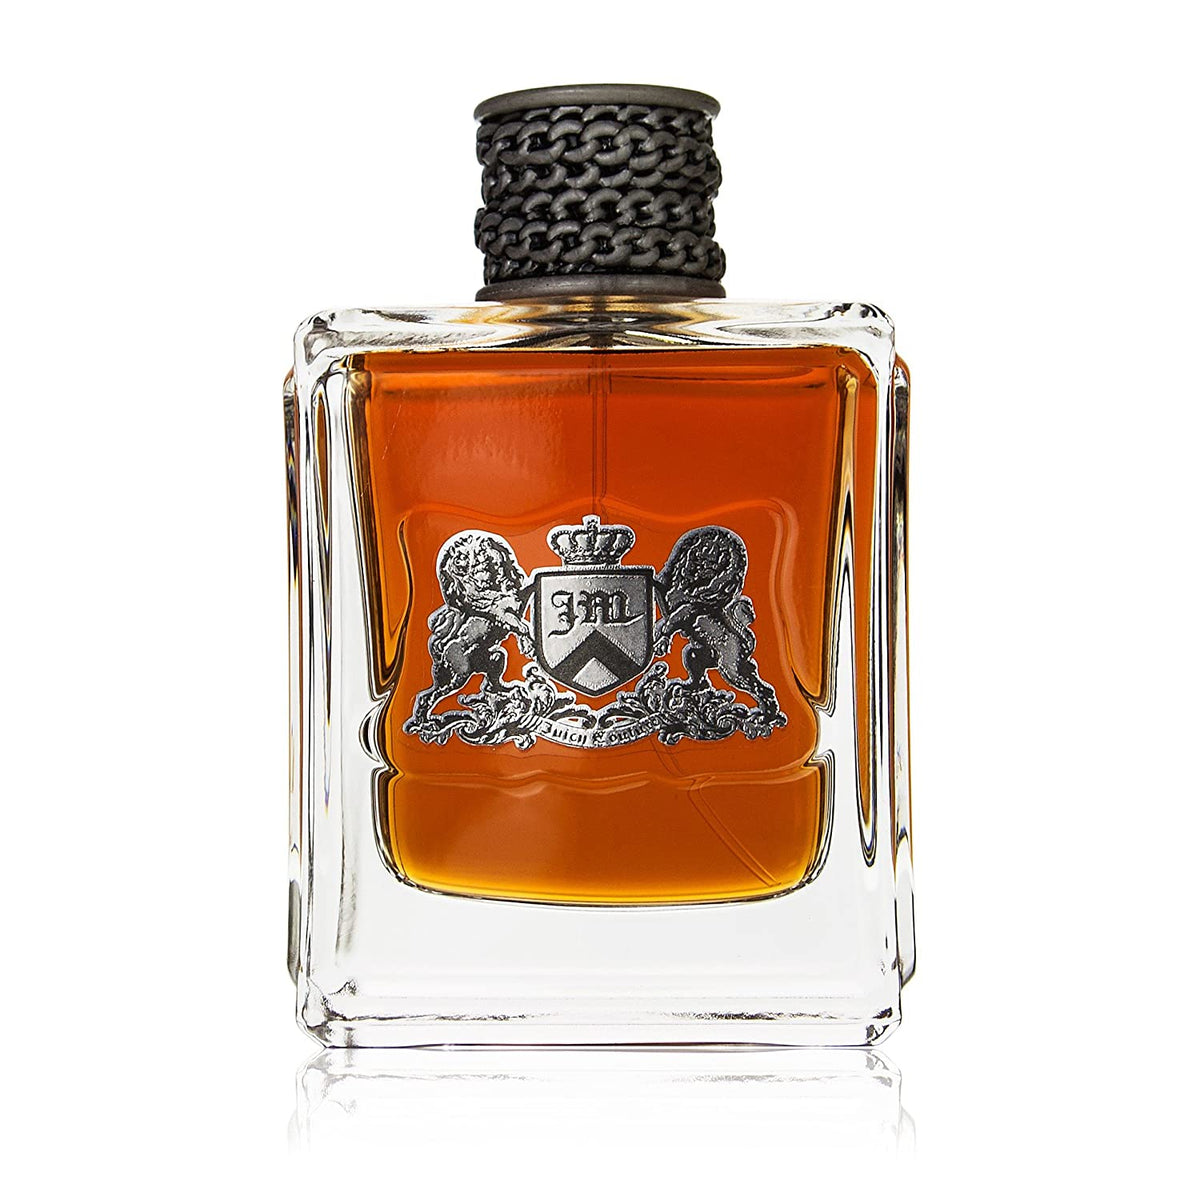 Juicy Couture Dirty English perfume for men - Eau de Toillette 